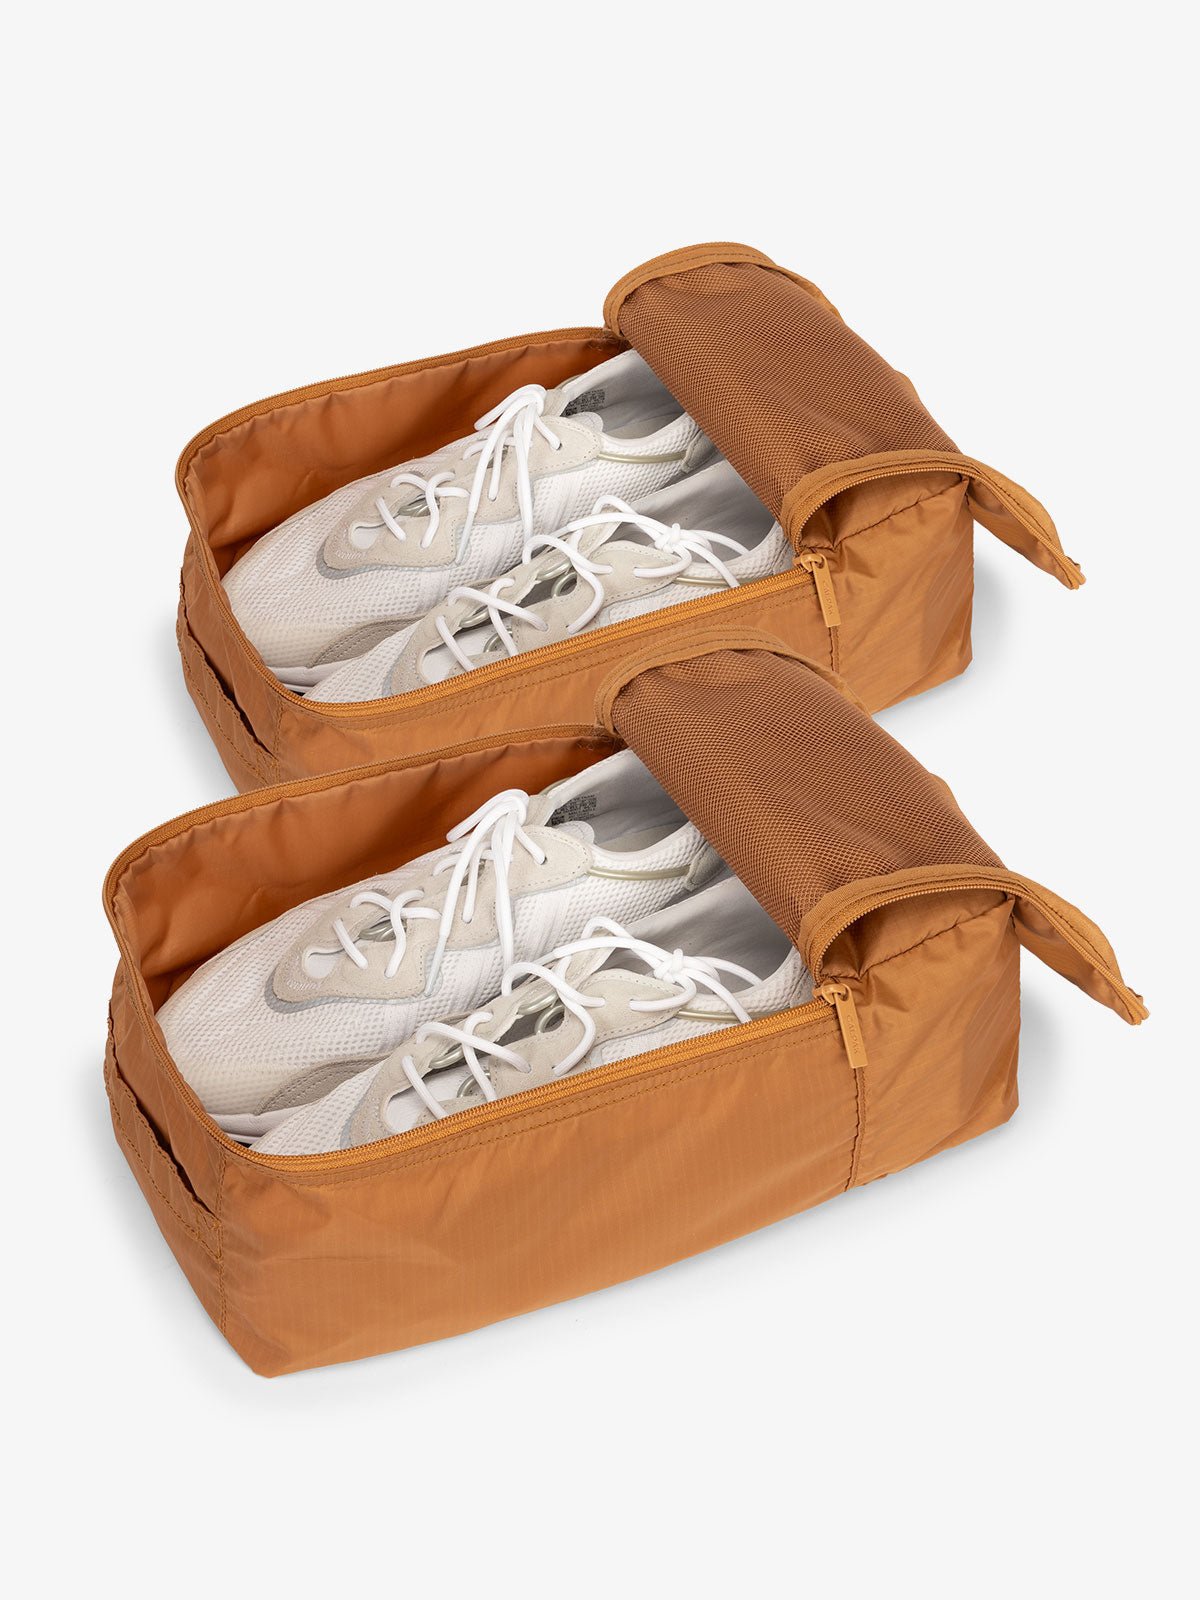 CALPAK Compakt shoe bag set with mesh pockets for travel in camel brown